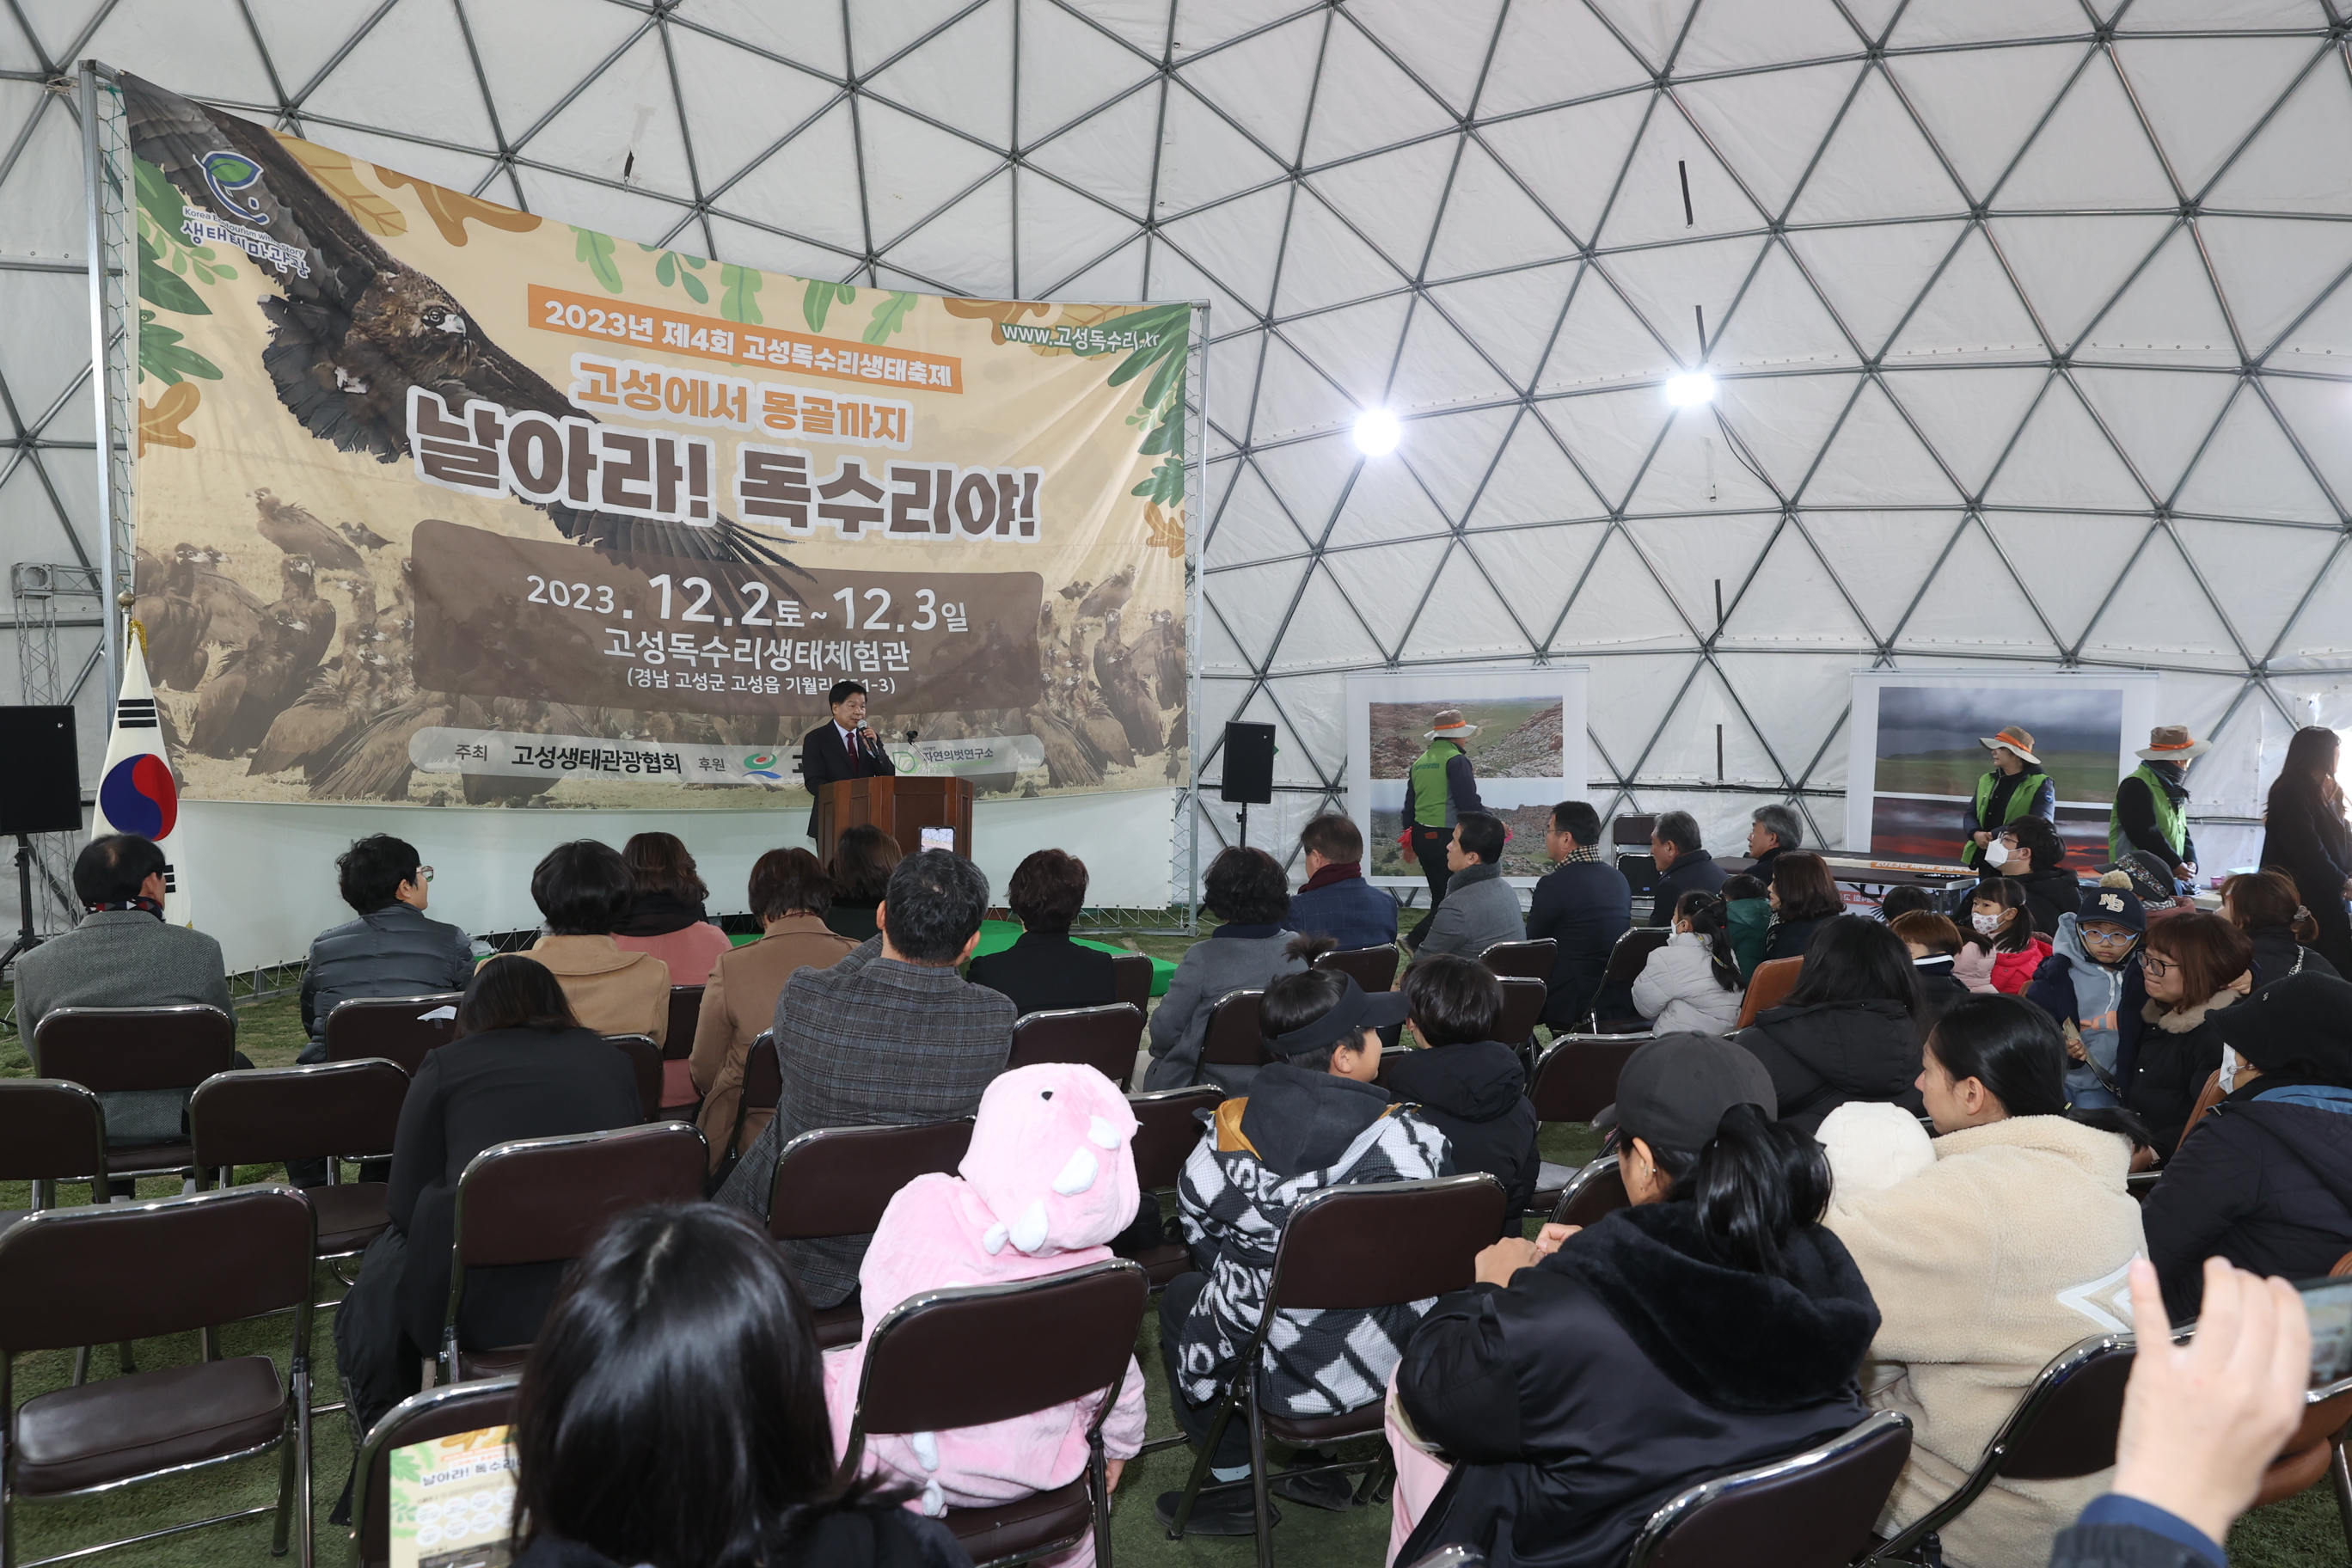 12월2일 제4회 독수리 생태축제 개최 관련자료